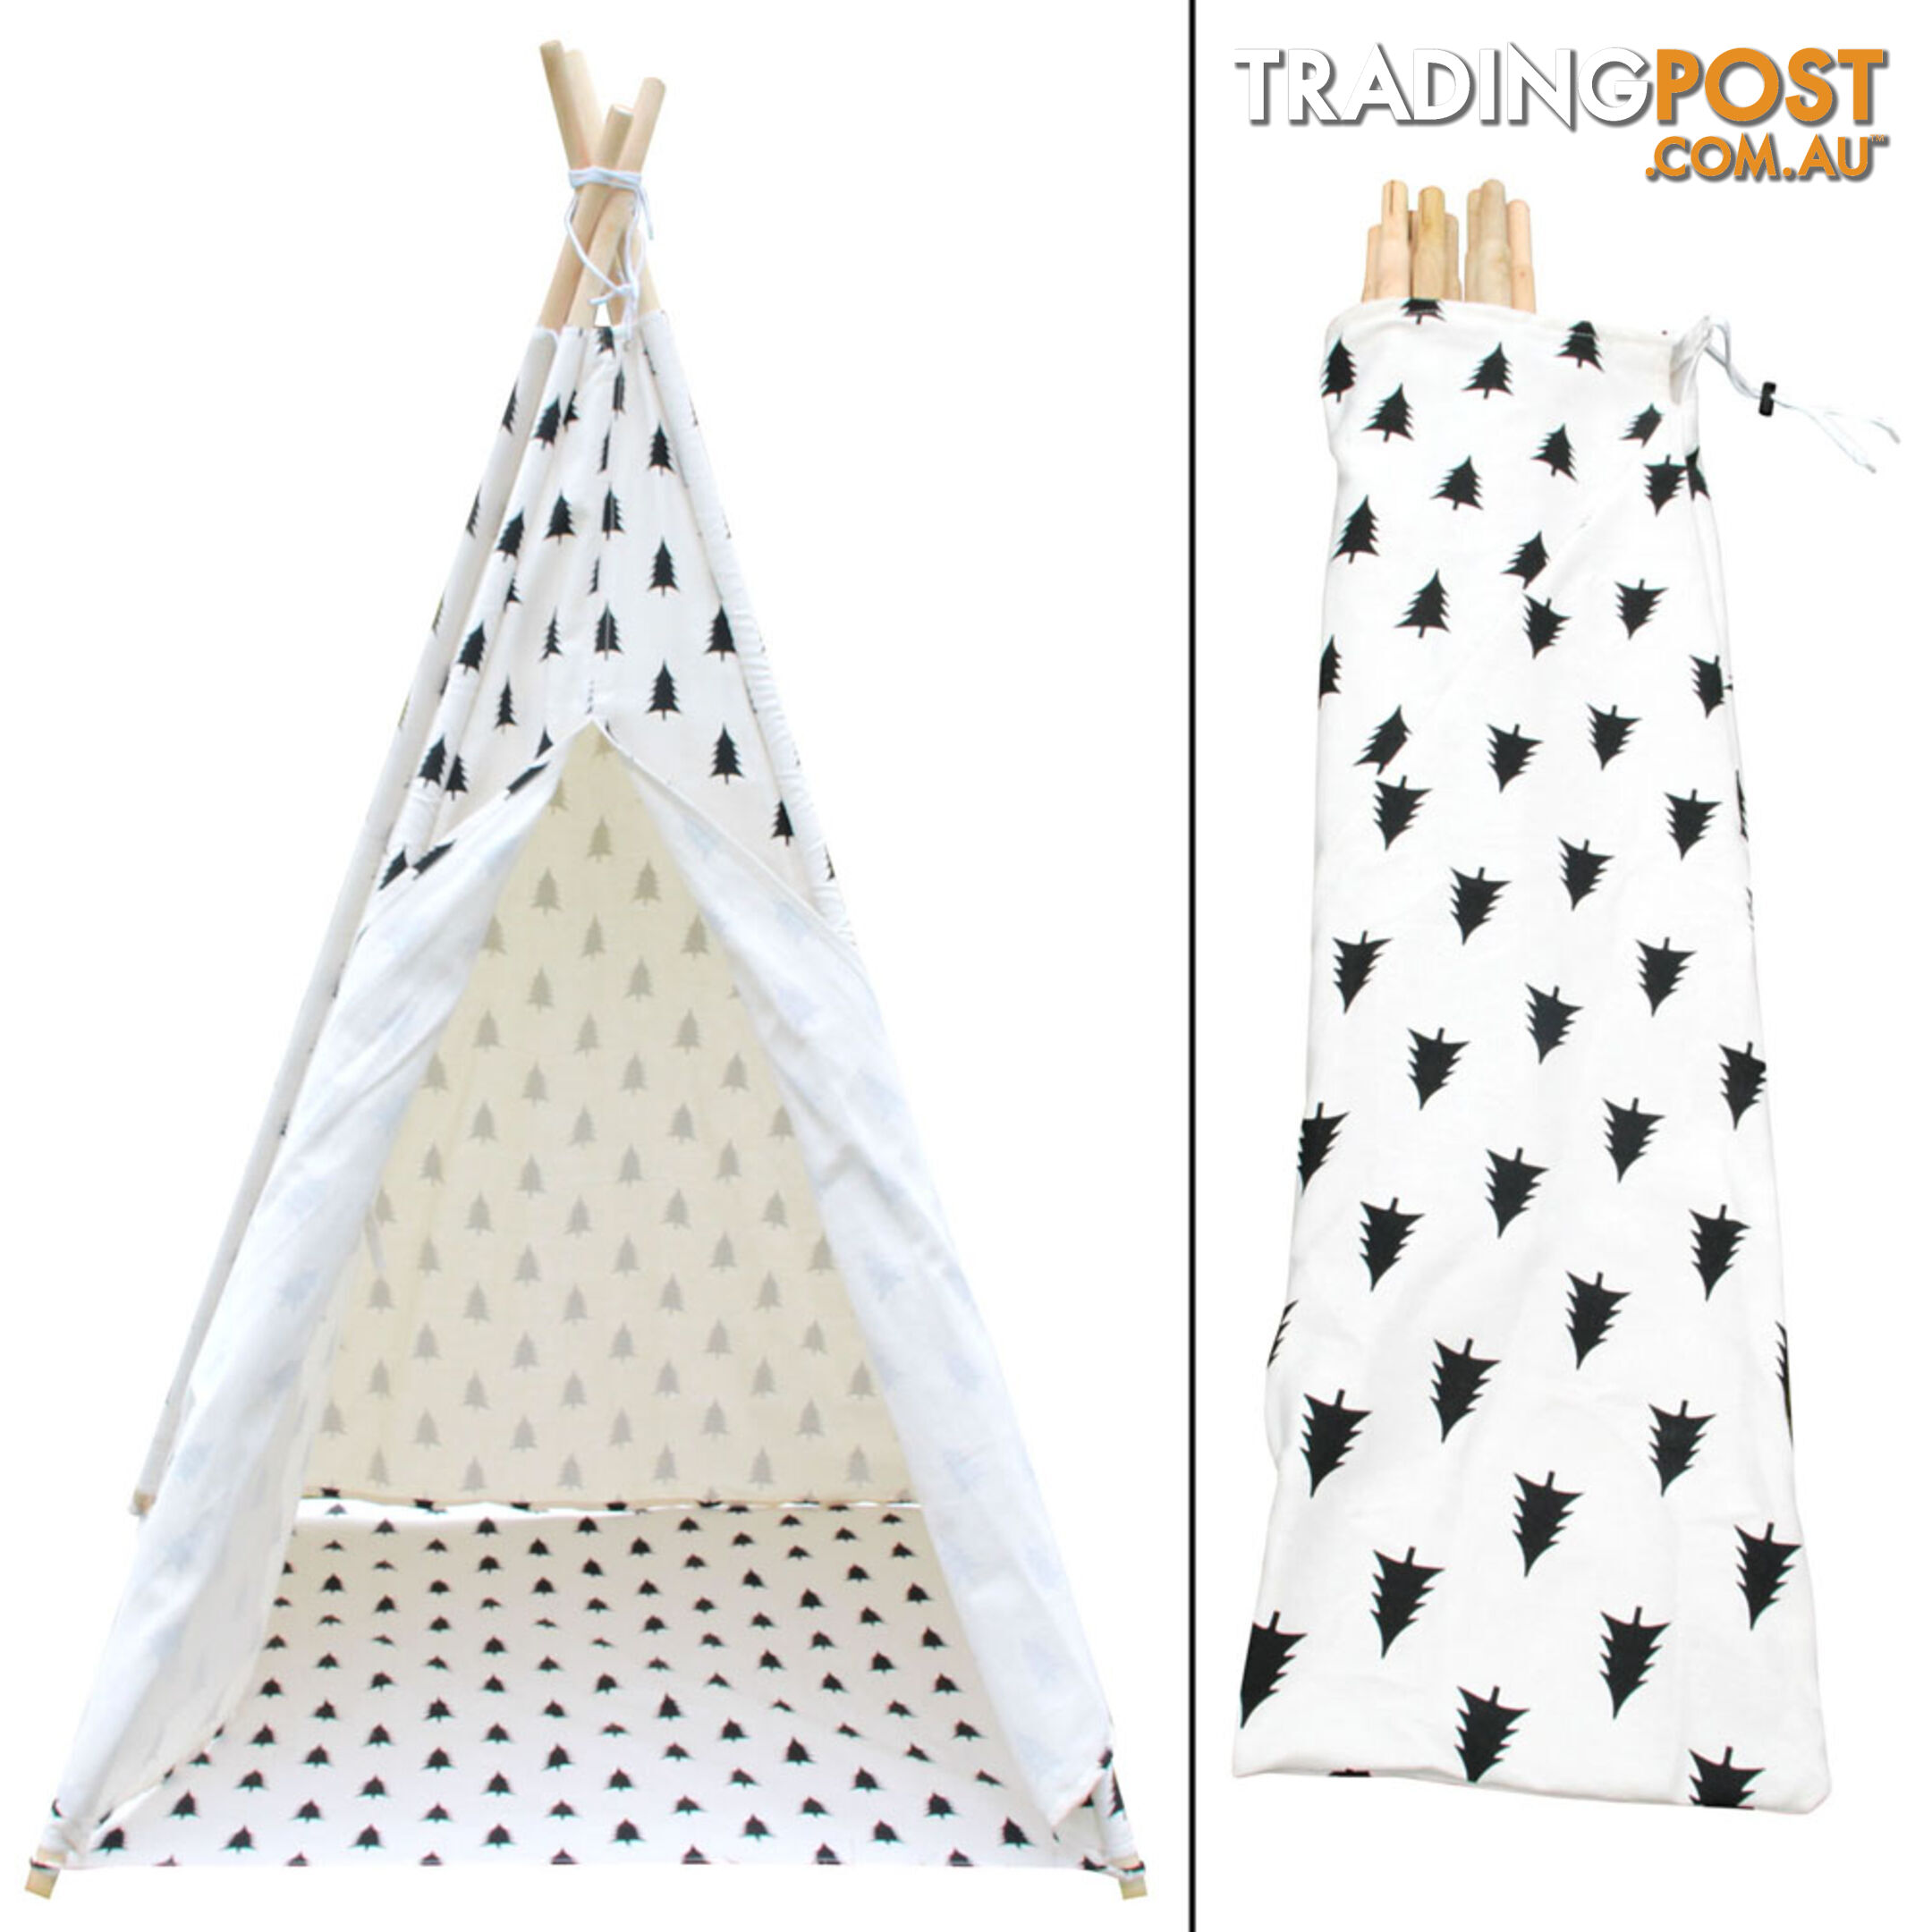 4 Poles Teepee Tent w/ Storage Bag Black White